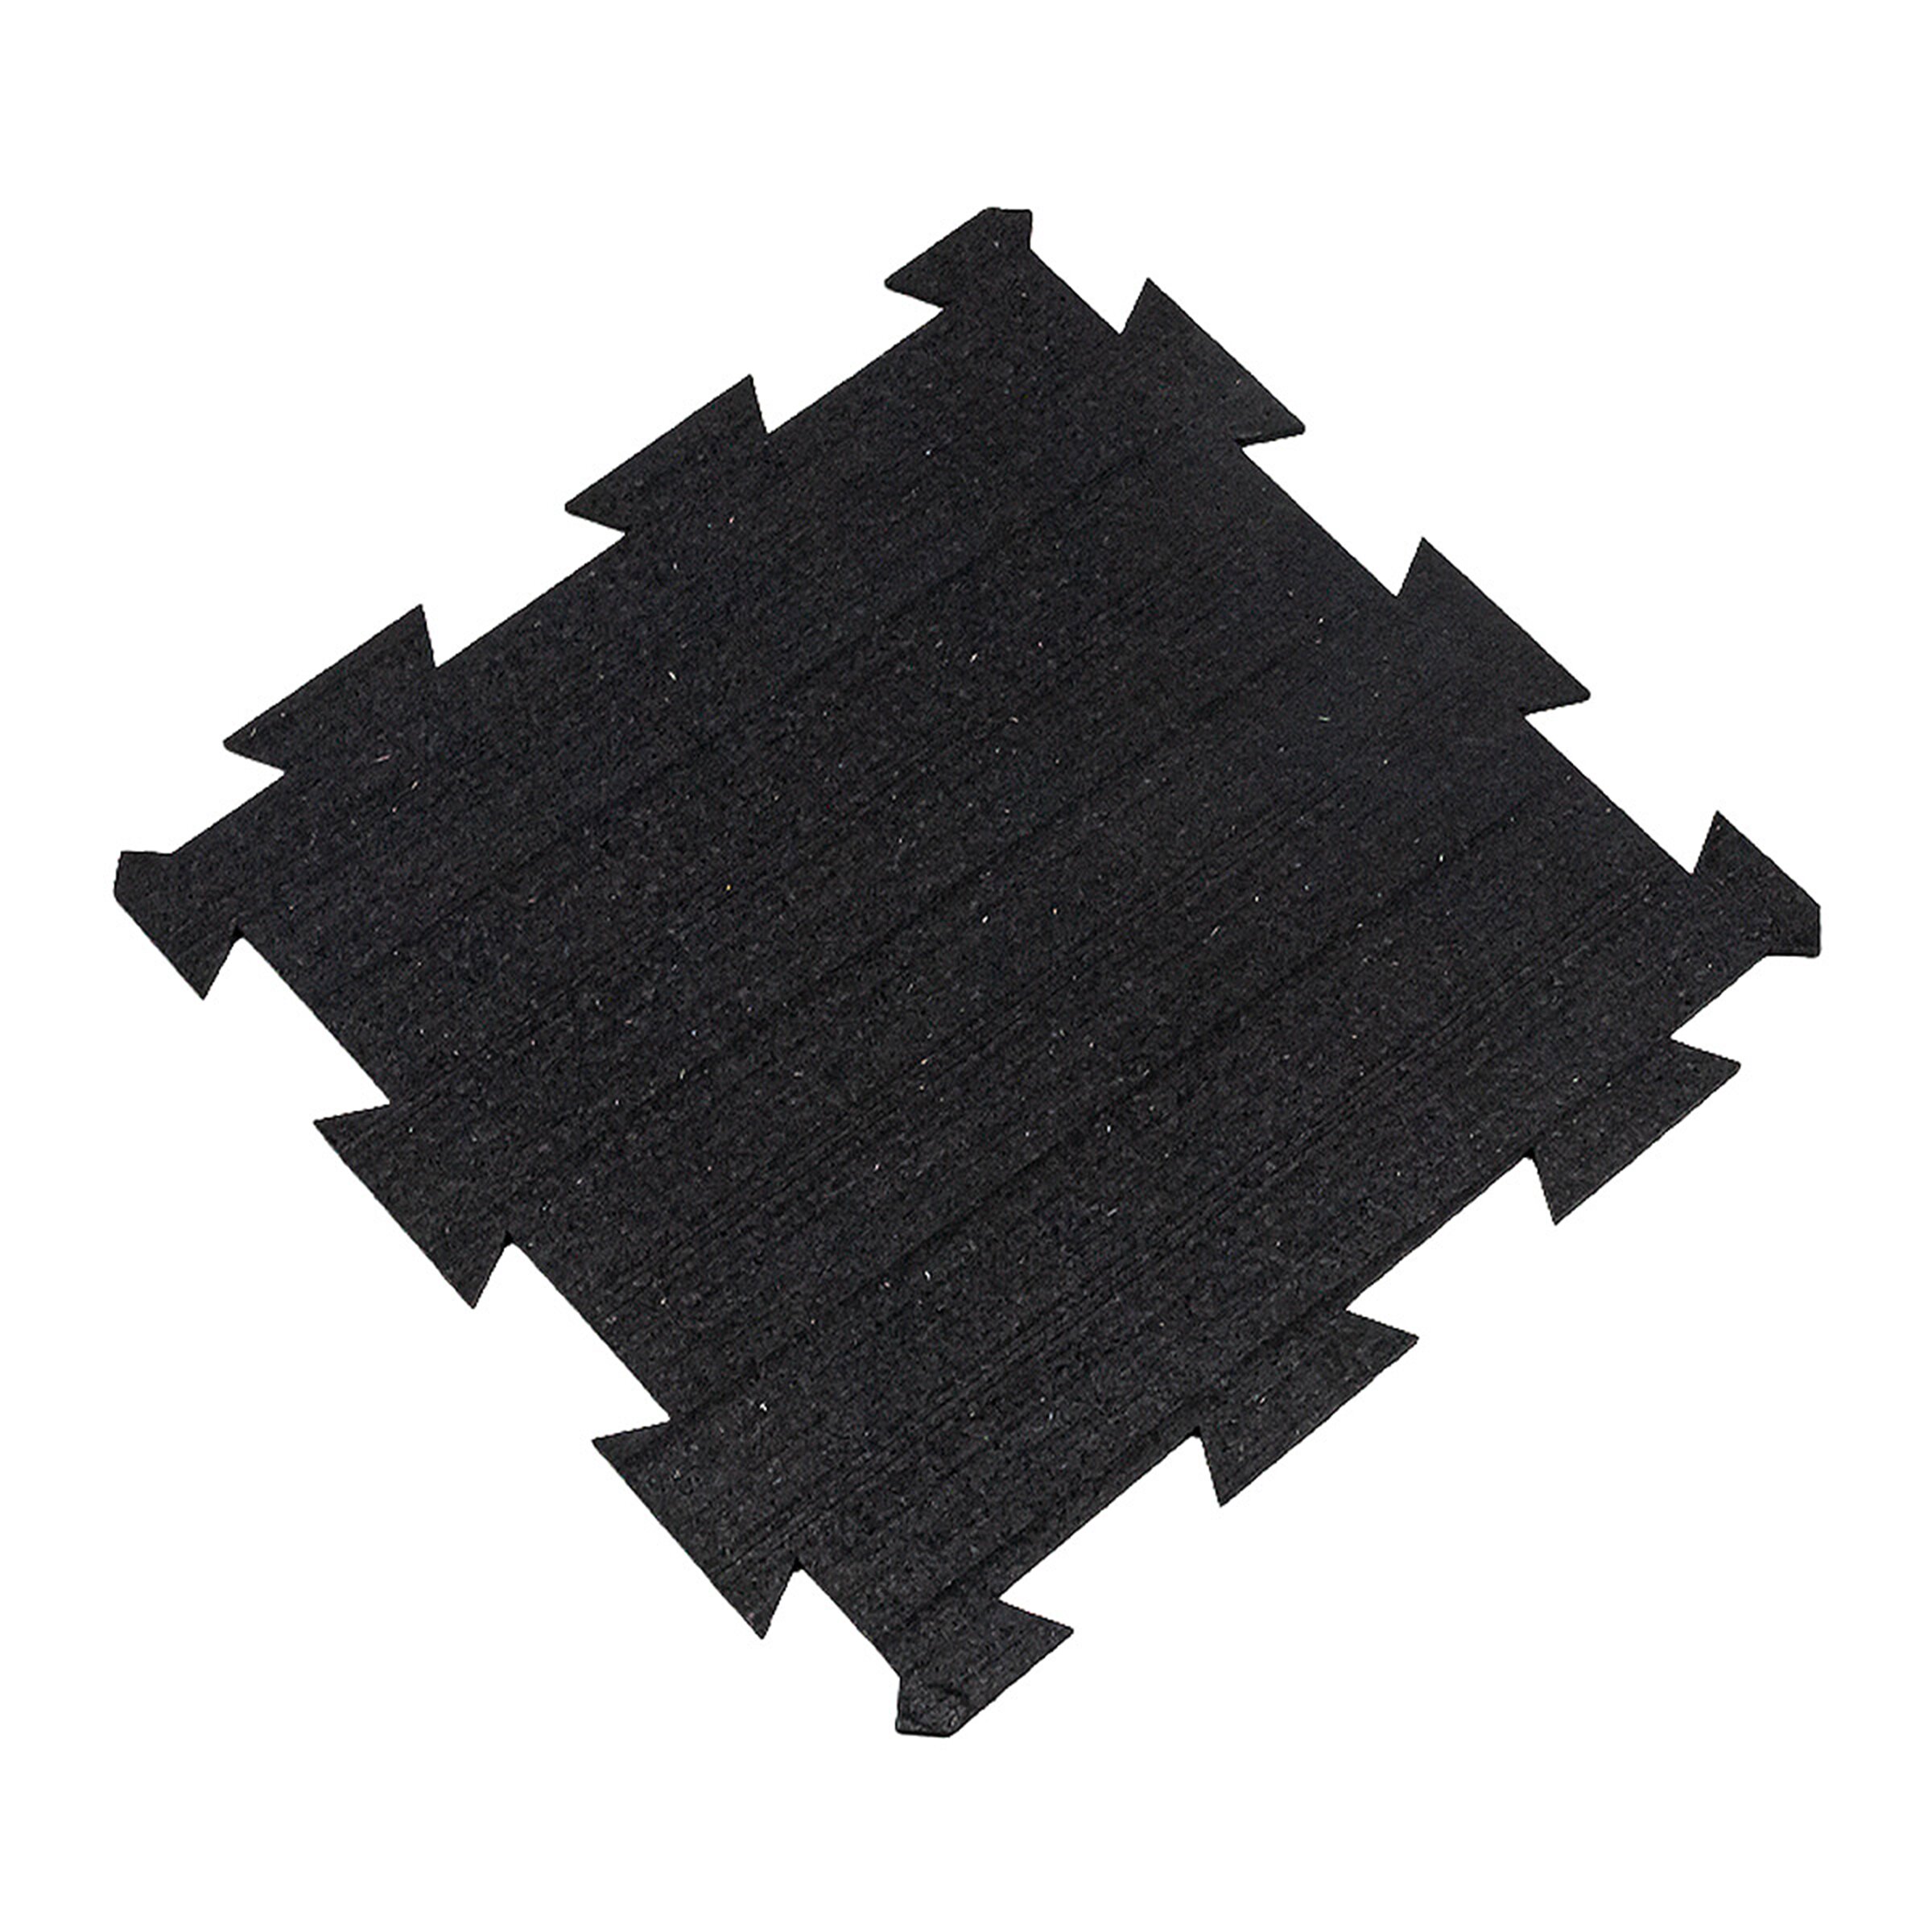 Černá gumová puzzle modulová dlažba FLOMA SF1050 FitFlo - délka 50 cm, šířka 50 cm, výška 0,8 cm